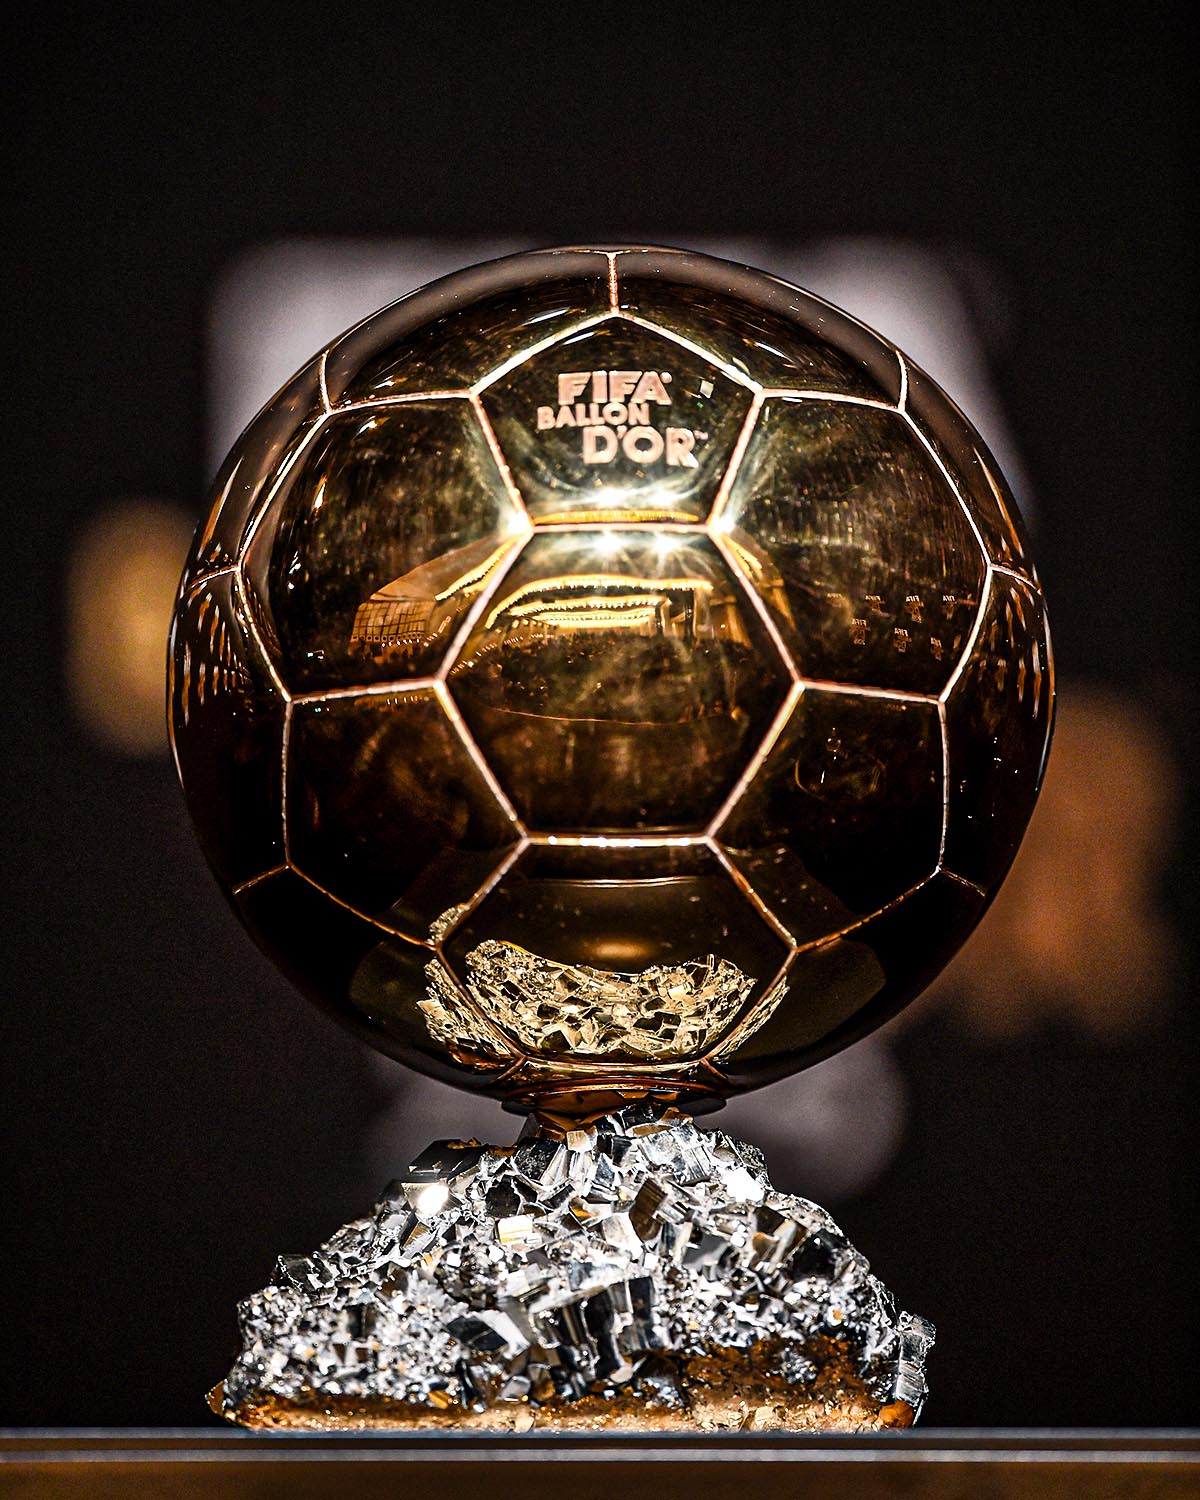 GOAL on Twitter "The winner of the 2023 Ballon d'Or will be ________ 🤔